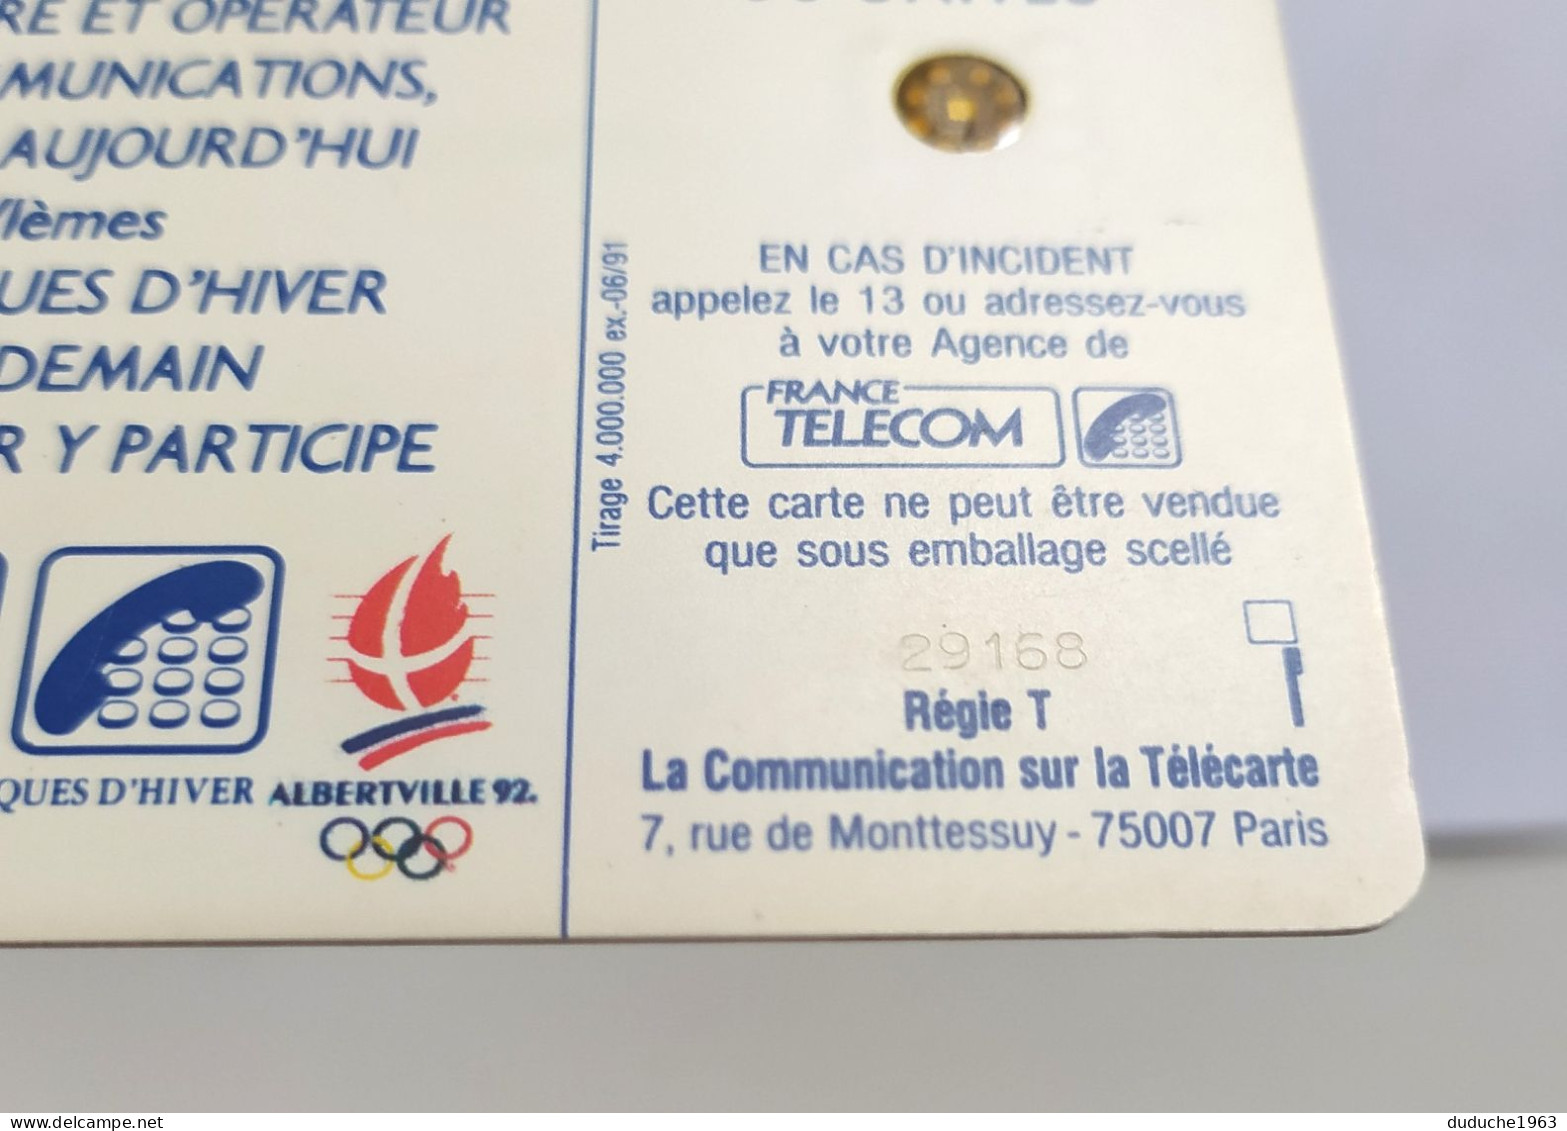 Télécarte France - Jeux Olympiques D'Hiver 1992 - Ohne Zuordnung